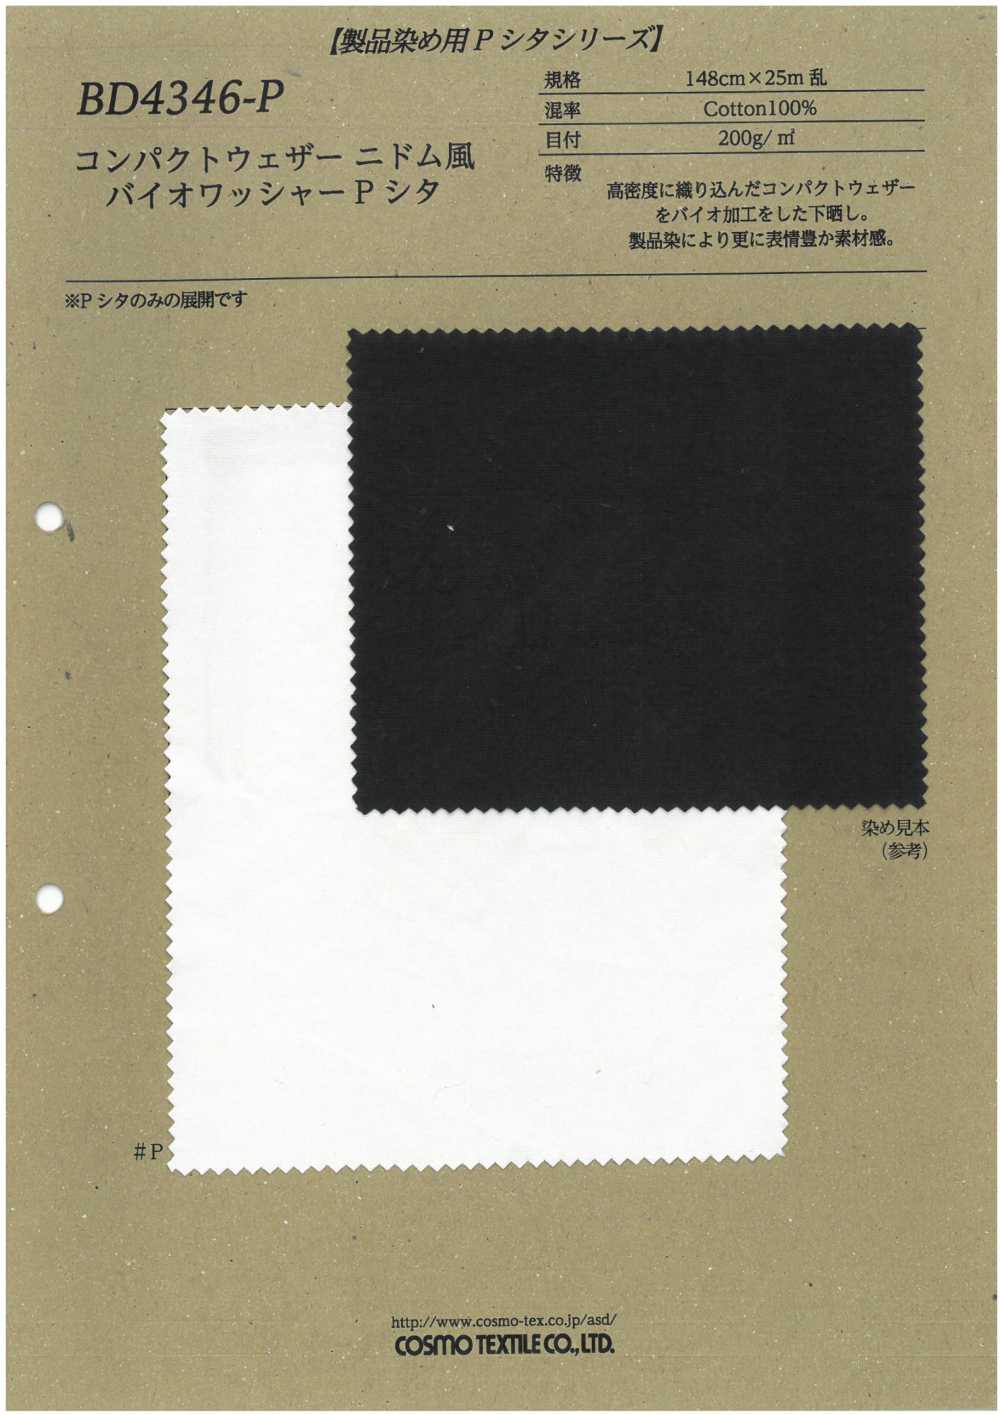 BD4346-P Tissu Compact Contre Les Intempéries, Style Nidom, Biolaveur, Traitement P Shita[Fabrication De Textile] COSMO TEXTILE